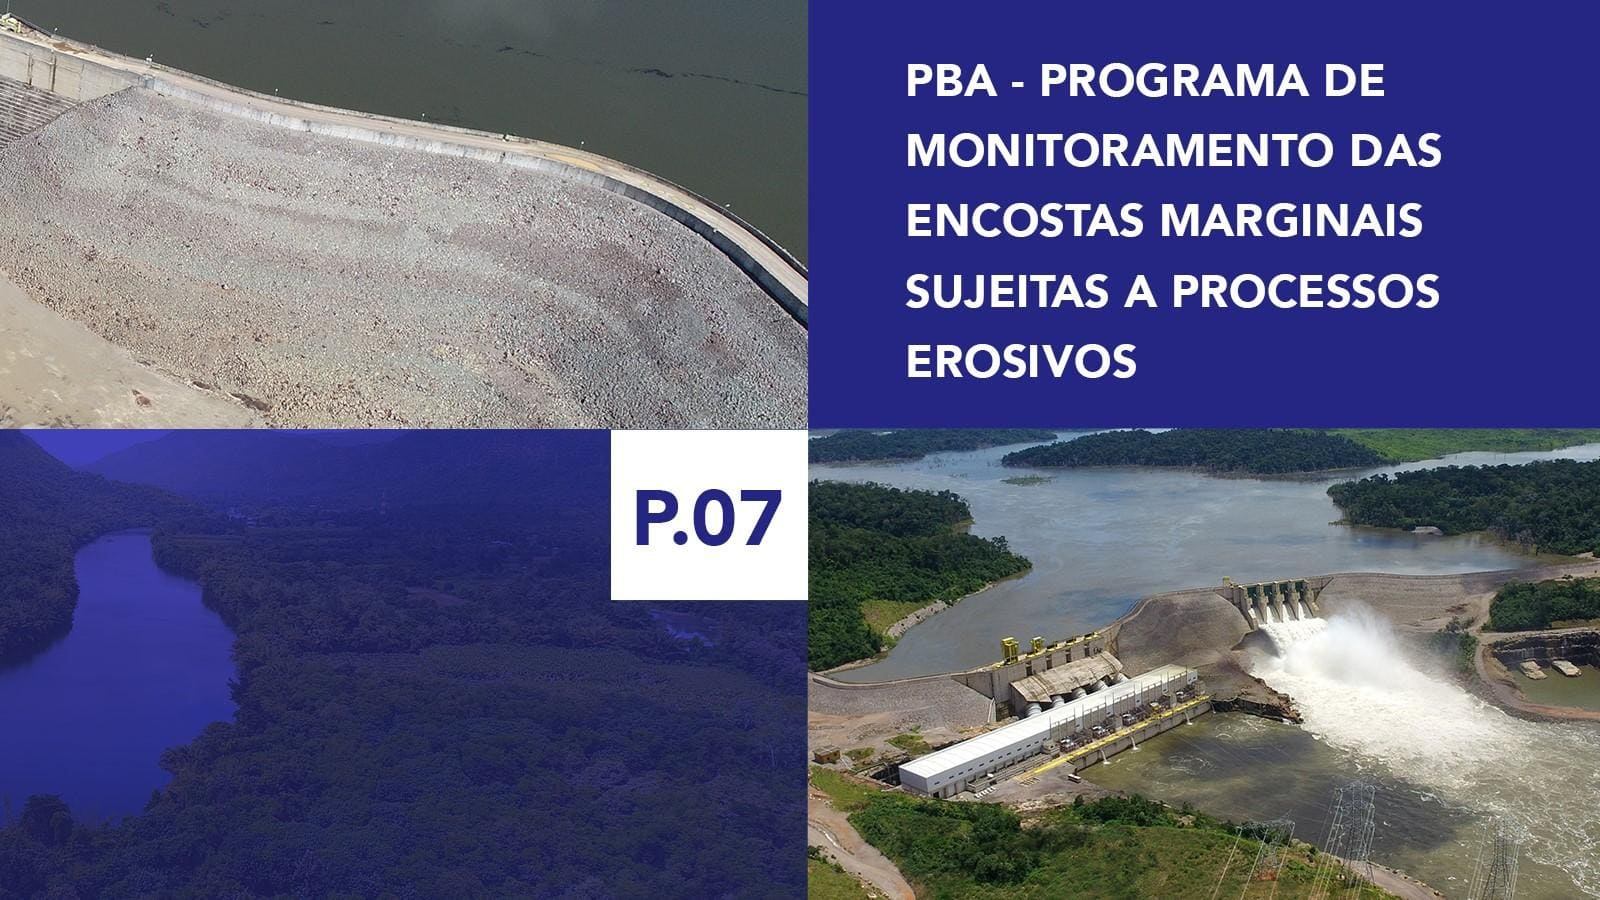 P.07 - Programa de Monitoramento da Encostas Marginais sujeitas a processos erosivos